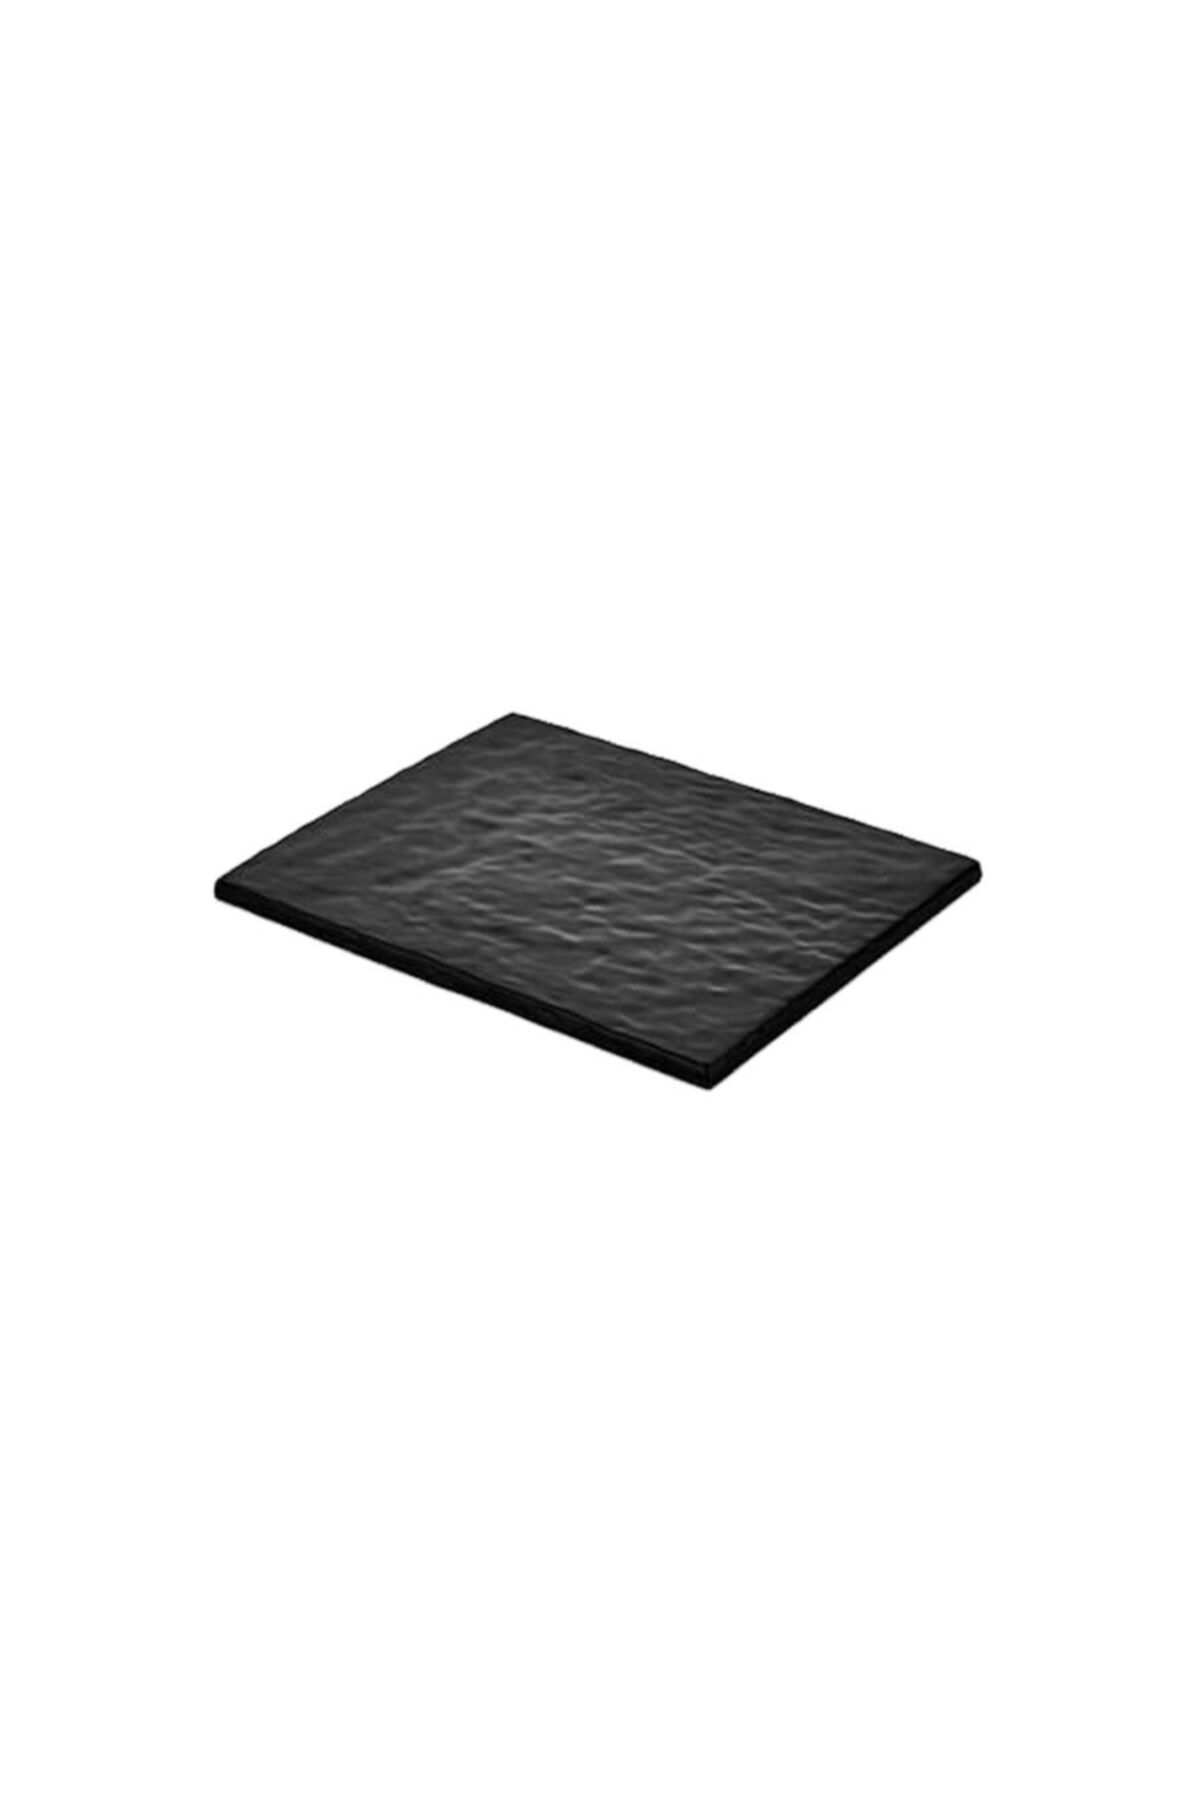 Külsan Melamin Siyah Pano 26,5x32,5 cm